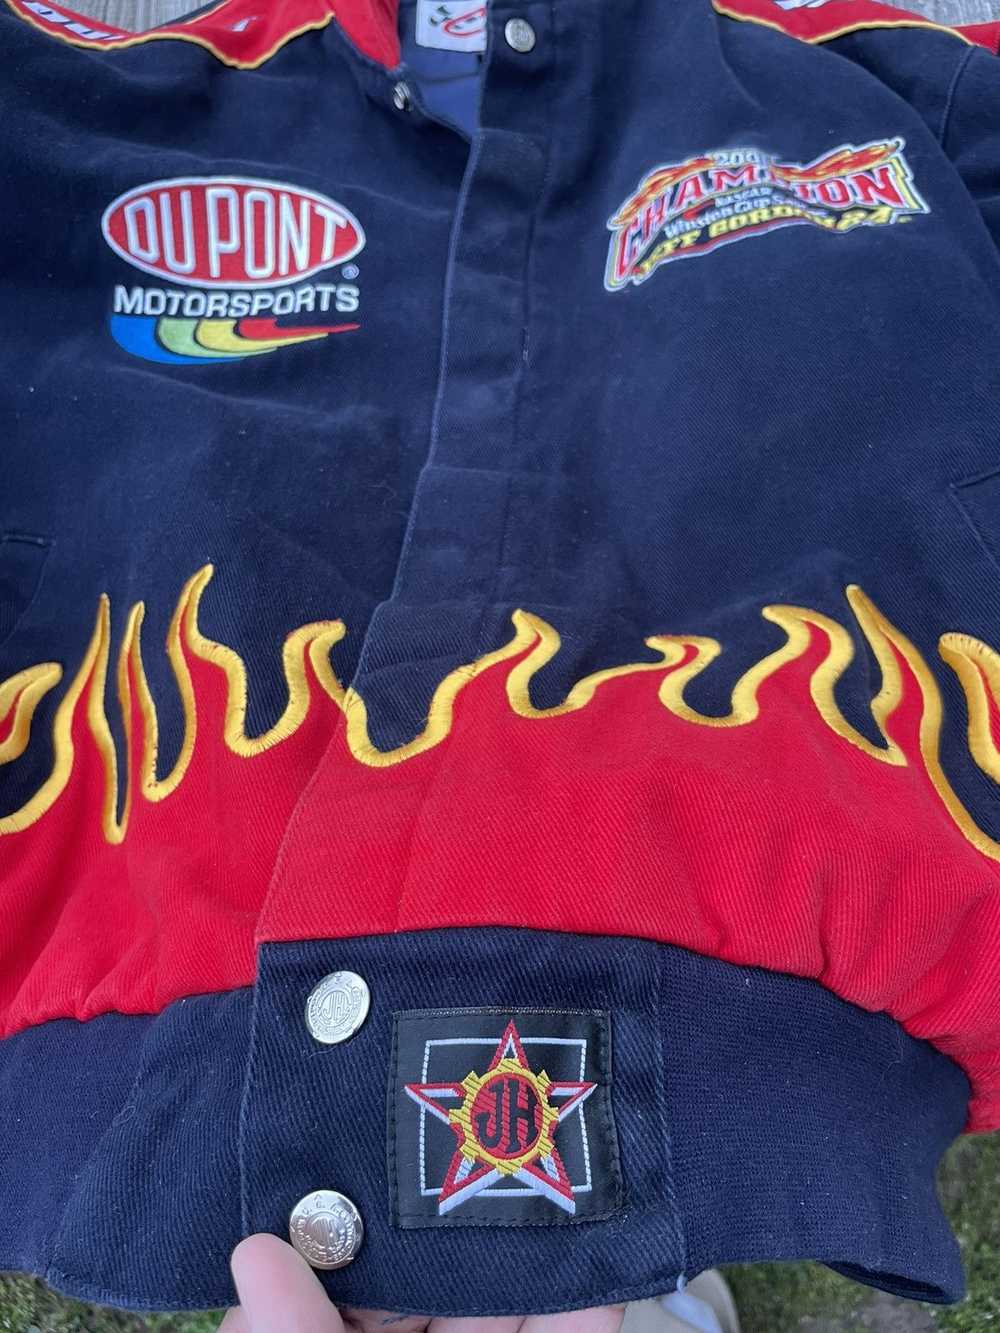 NASCAR Vintage NASCAR rare jacket flames - image 4